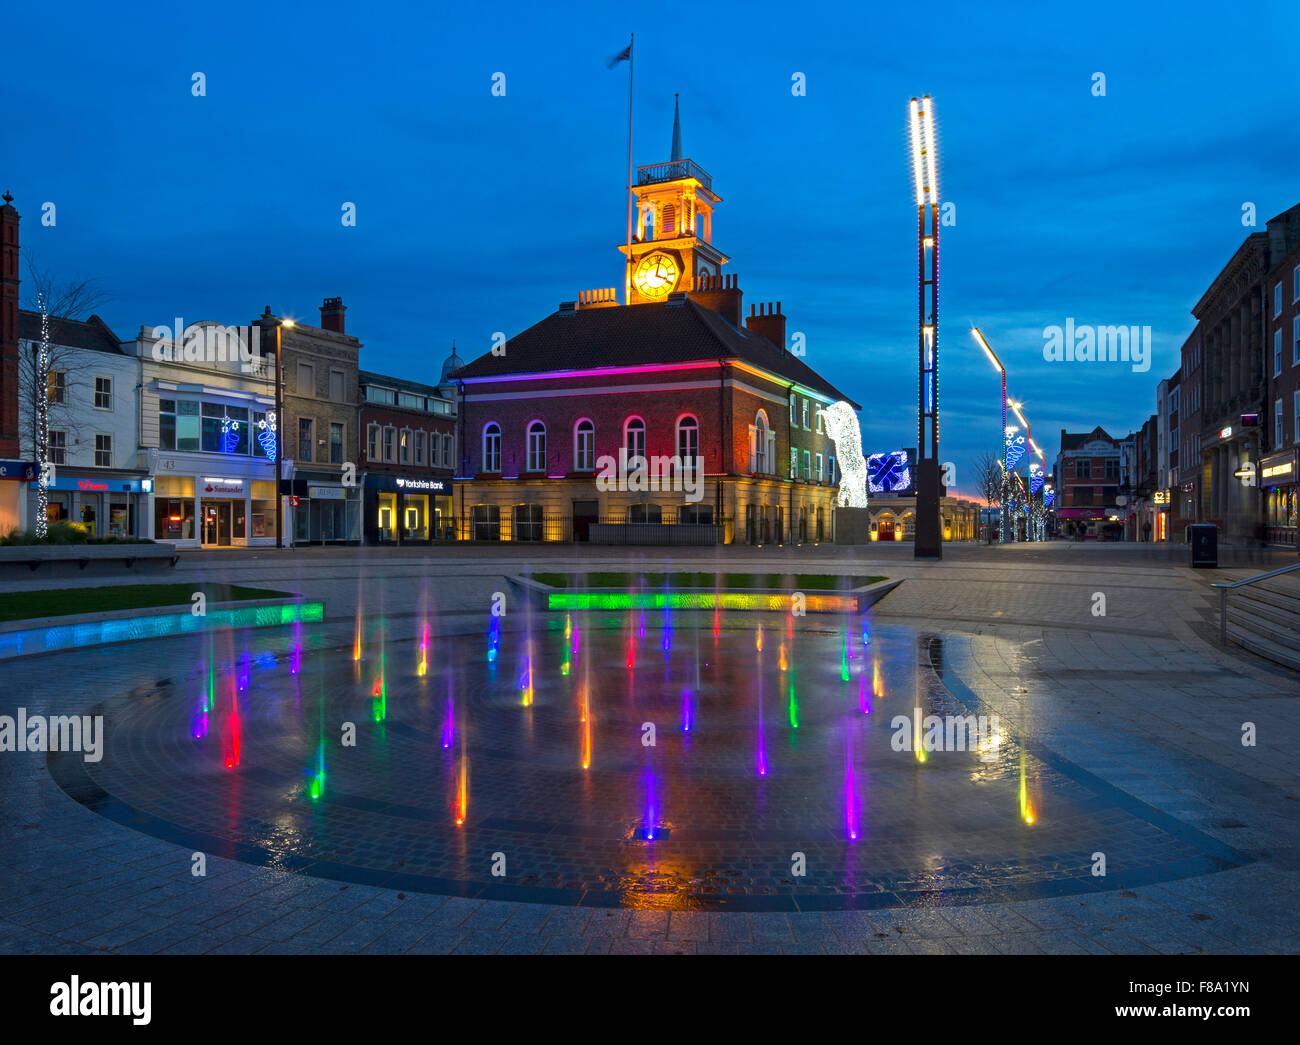 Einen Blick in der Abenddämmerung zu Weihnachten des Rathauses auf der High Street in Stockton on Tees durch die beleuchteten Springbrunnen zu sehen Stockfoto